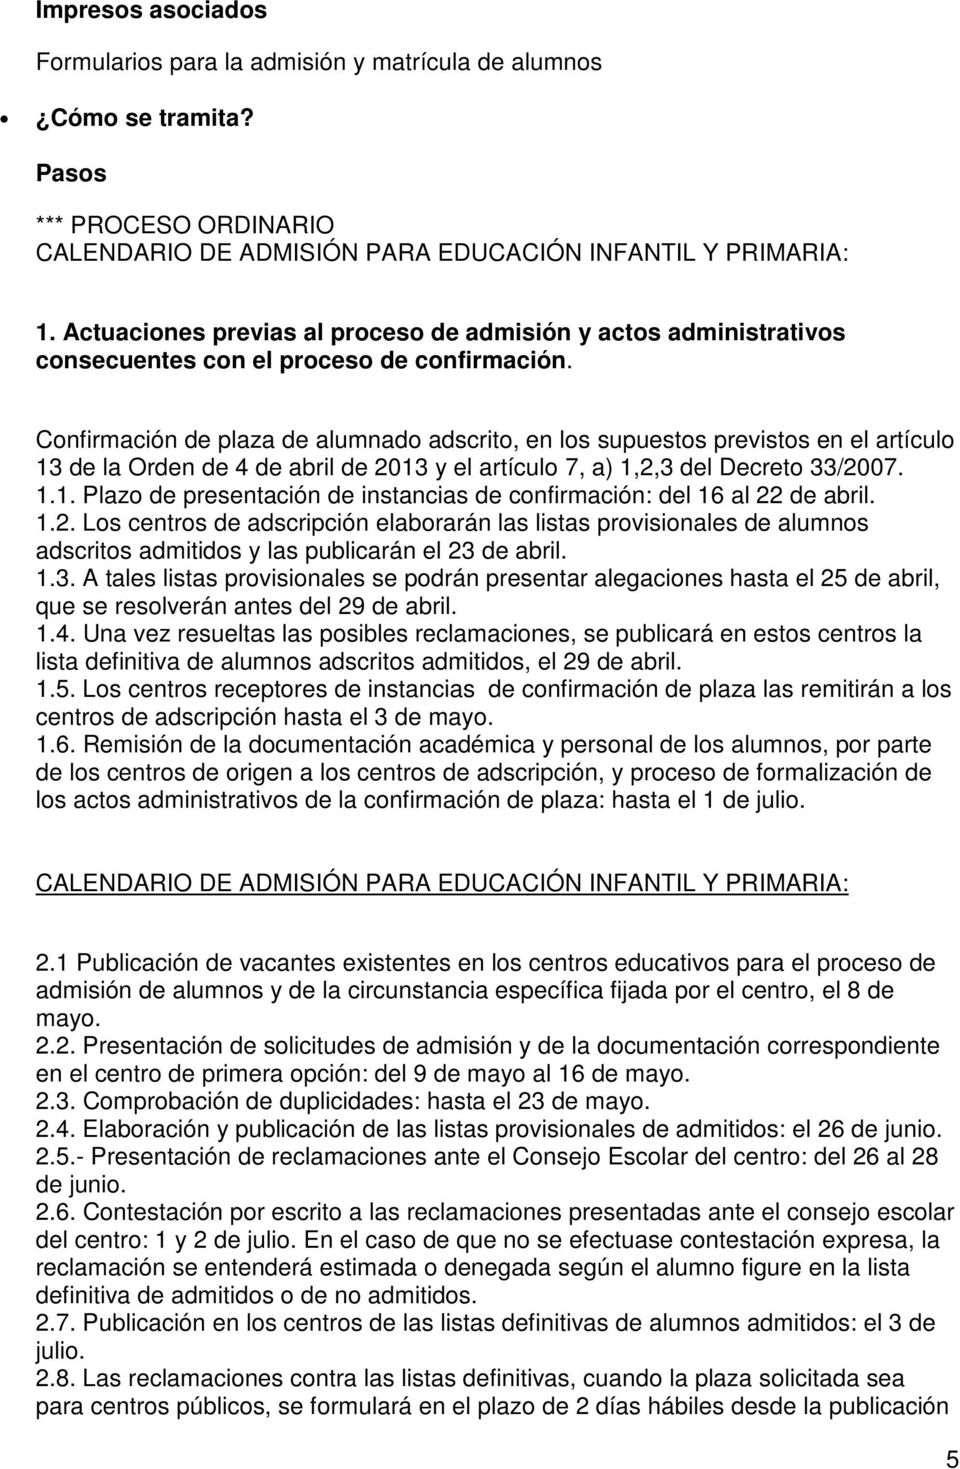 Confirmación de plaza de alumnado adscrito, en los supuestos previstos en el artículo 13 de la Orden de 4 de abril de 2013 y el artículo 7, a) 1,2,3 del Decreto 33/2007. 1.1. Plazo de presentación de instancias de confirmación: del 16 al 22 de abril.